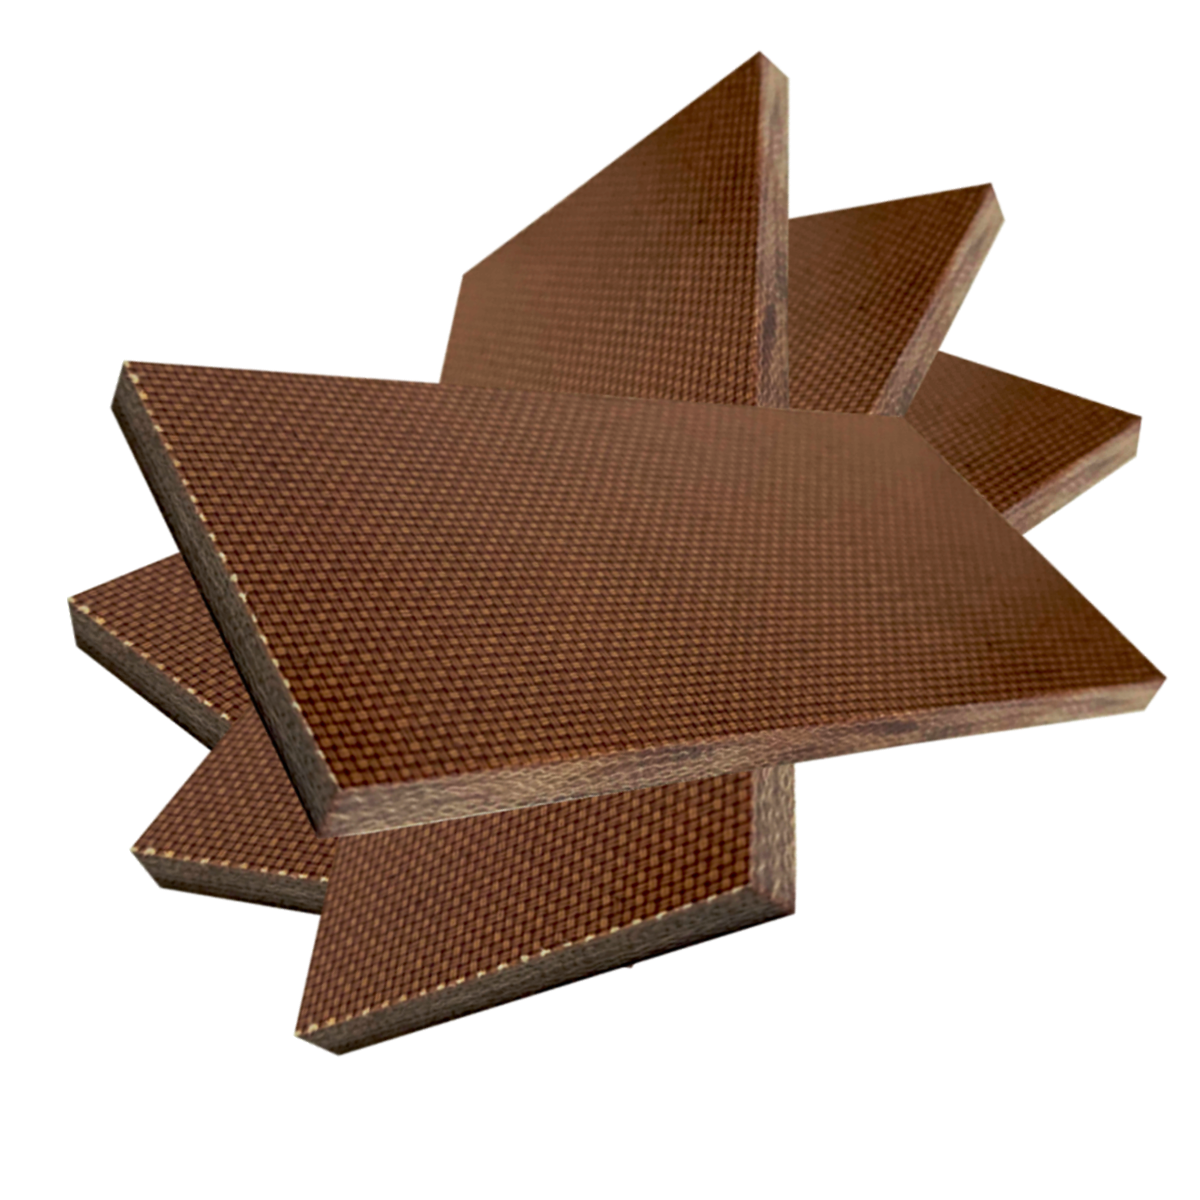 4 KUSY - Přířez z desky - Textit, Texgumoid  - 1 x 250 x 500 mm